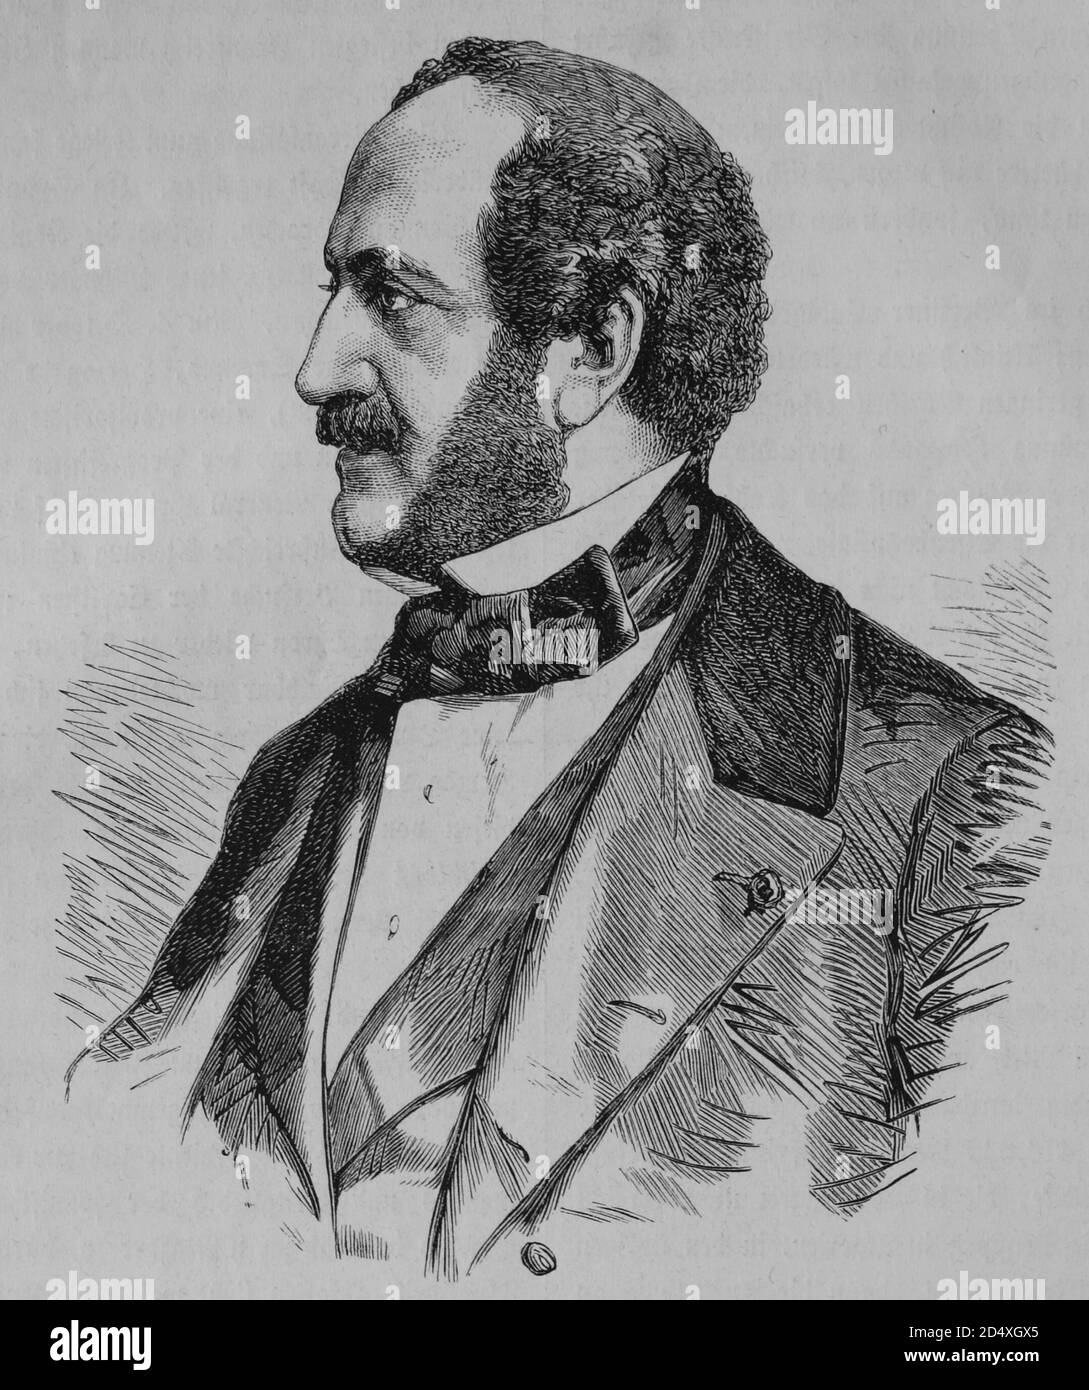 Alfred Antoine Agenor Duke de Gramont, ministre français des Affaires étrangères, illustre l'histoire de la guerre, guerre allemande - française 1870-1871 Banque D'Images